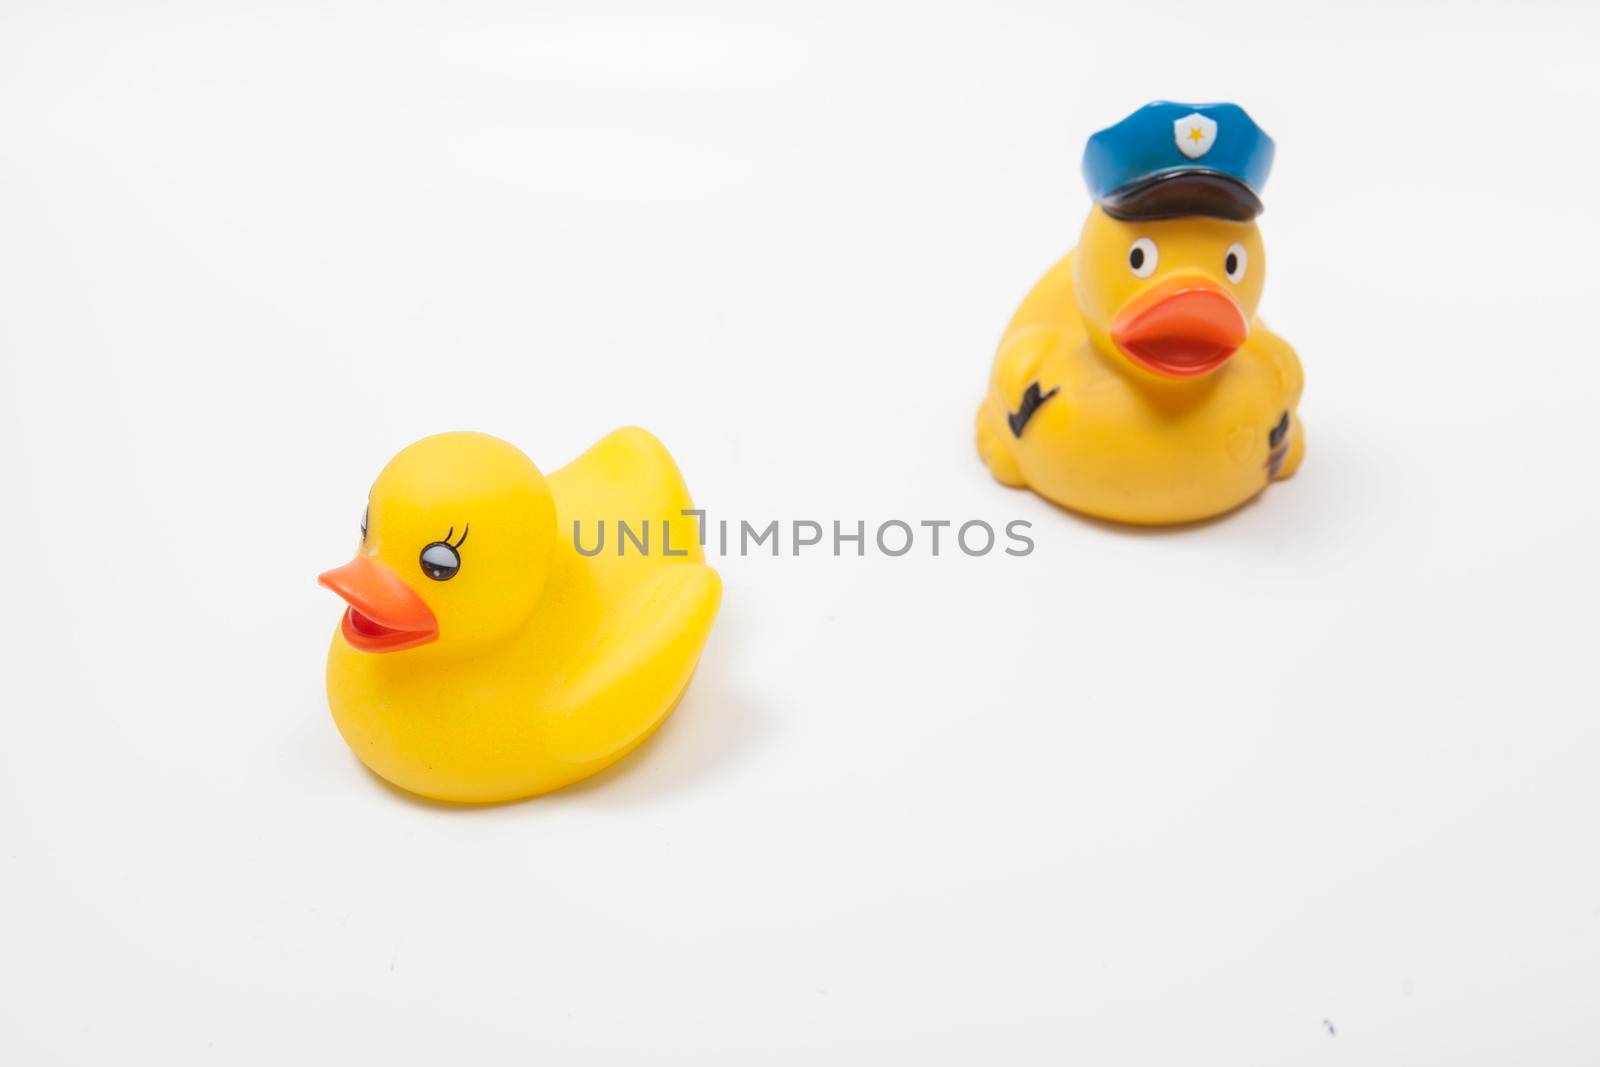 Rubber duck policeman chasing rubber duck criminal. Law enforcement concept